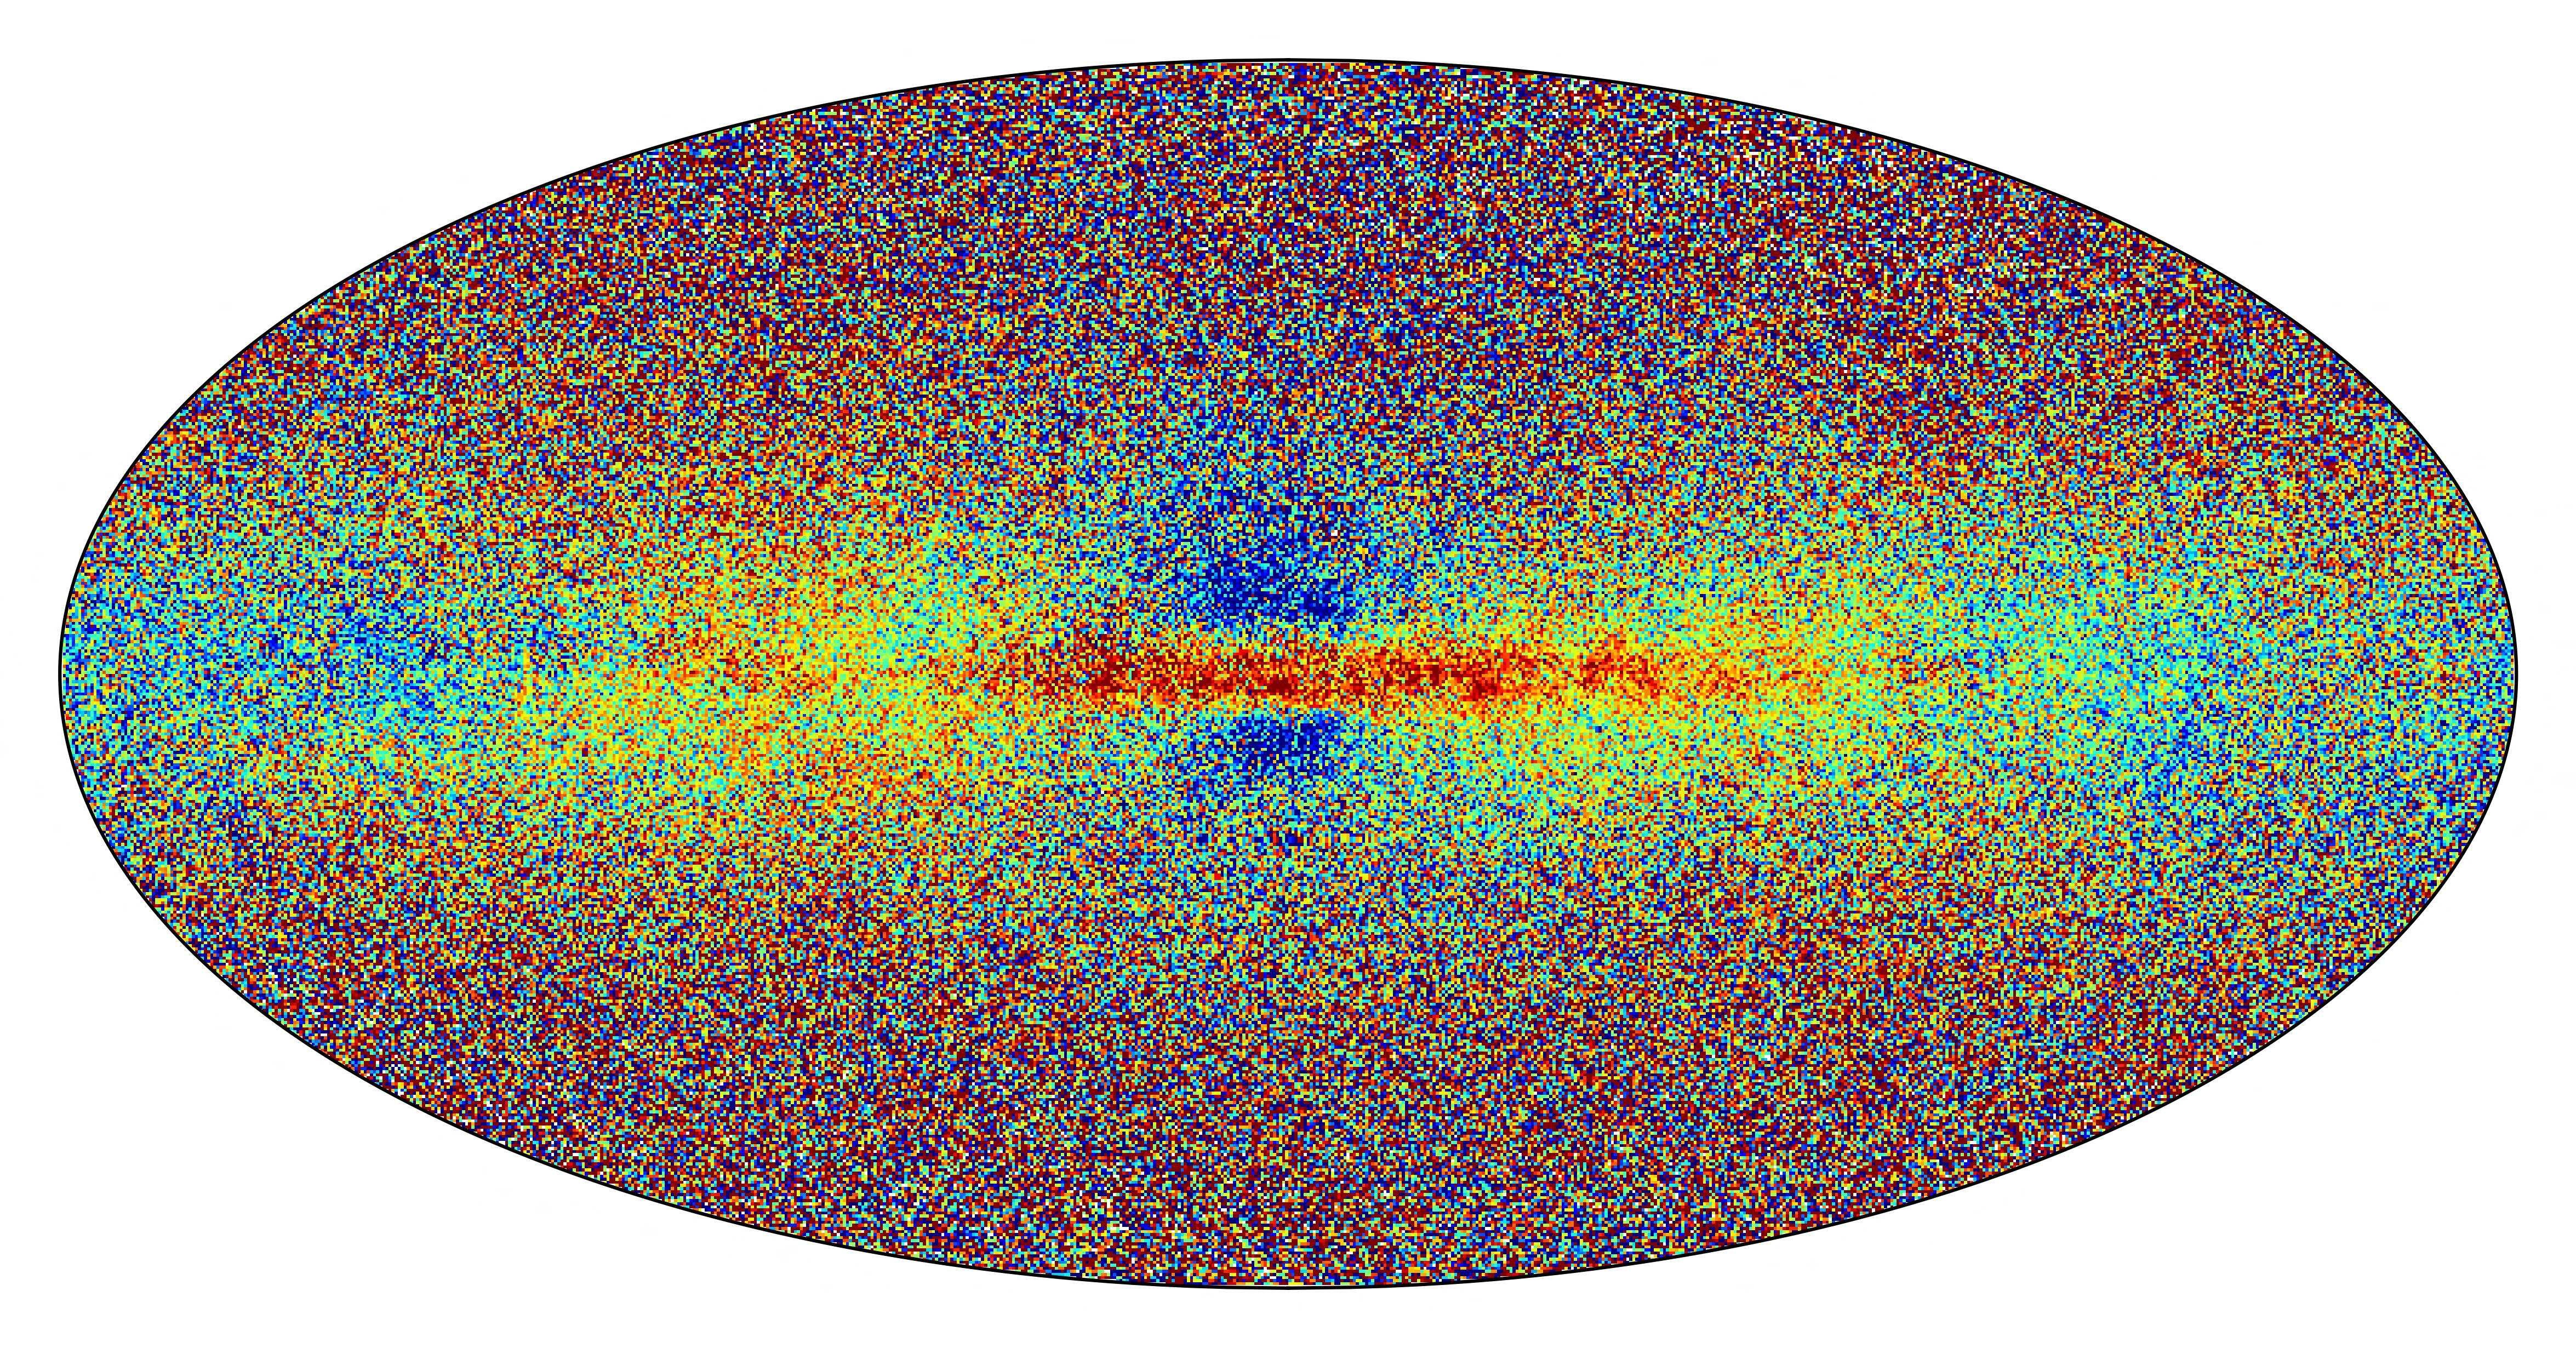 Esta imagen del folleto publicada por la Agencia Espacial Europea (ESA) el 13 de junio de 2022 muestra un mapa de la Vía Láctea elaborado con nuevos datos recopilados por la sonda espacial Gaia de la ESA, que muestra una muestra de las estrellas de la galaxia en la publicación de datos de Gaia. 3.